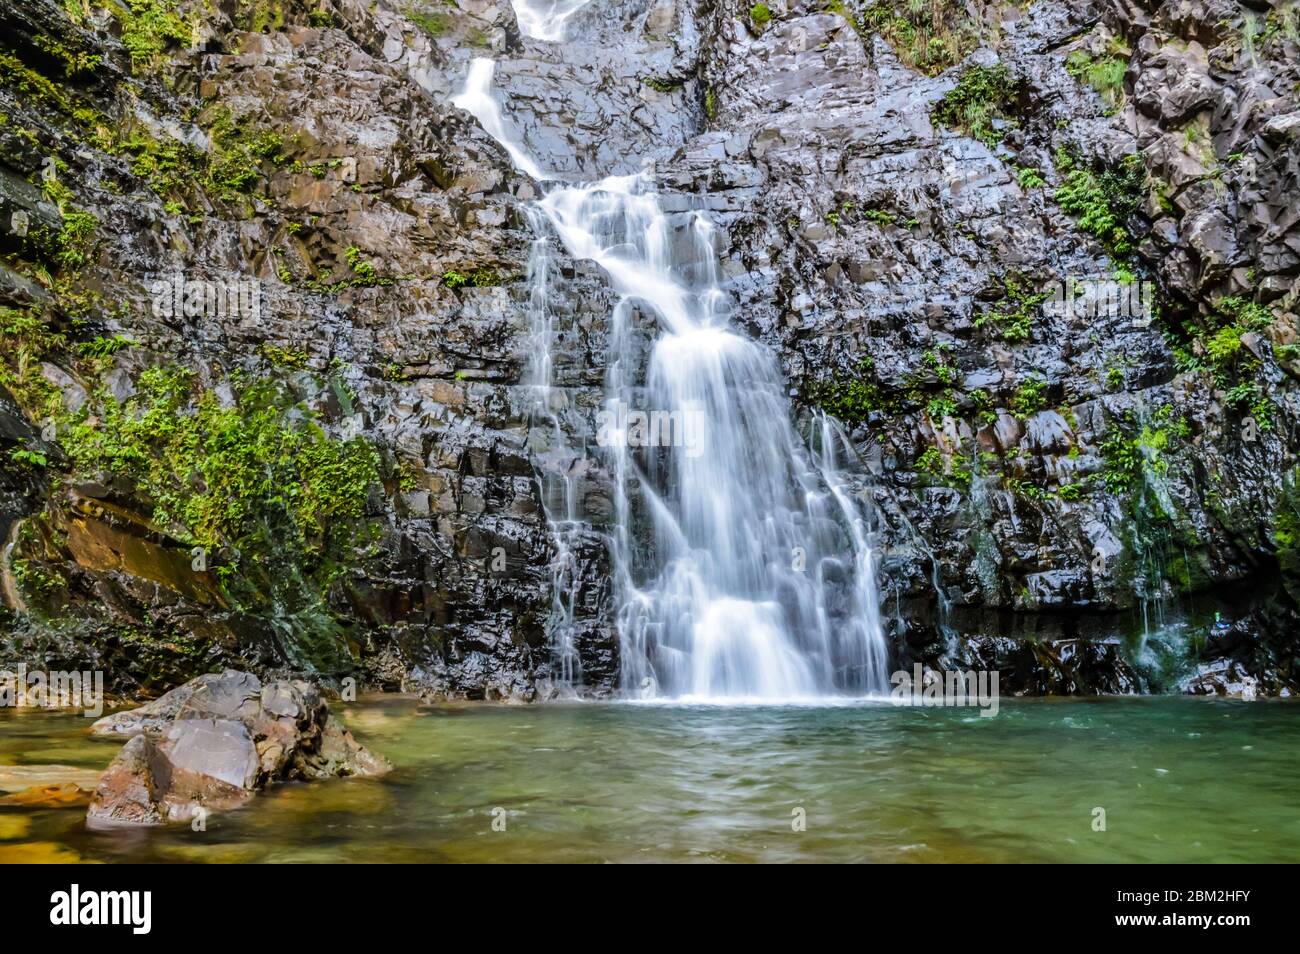 Der Temurun Wasserfall in Malaysia - Forest Park mit einem 3-stufigen Wasserfall mit flachen und tiefen Pools. Berühmte & schöne Natur in Kedah Malaysia. Stockfoto